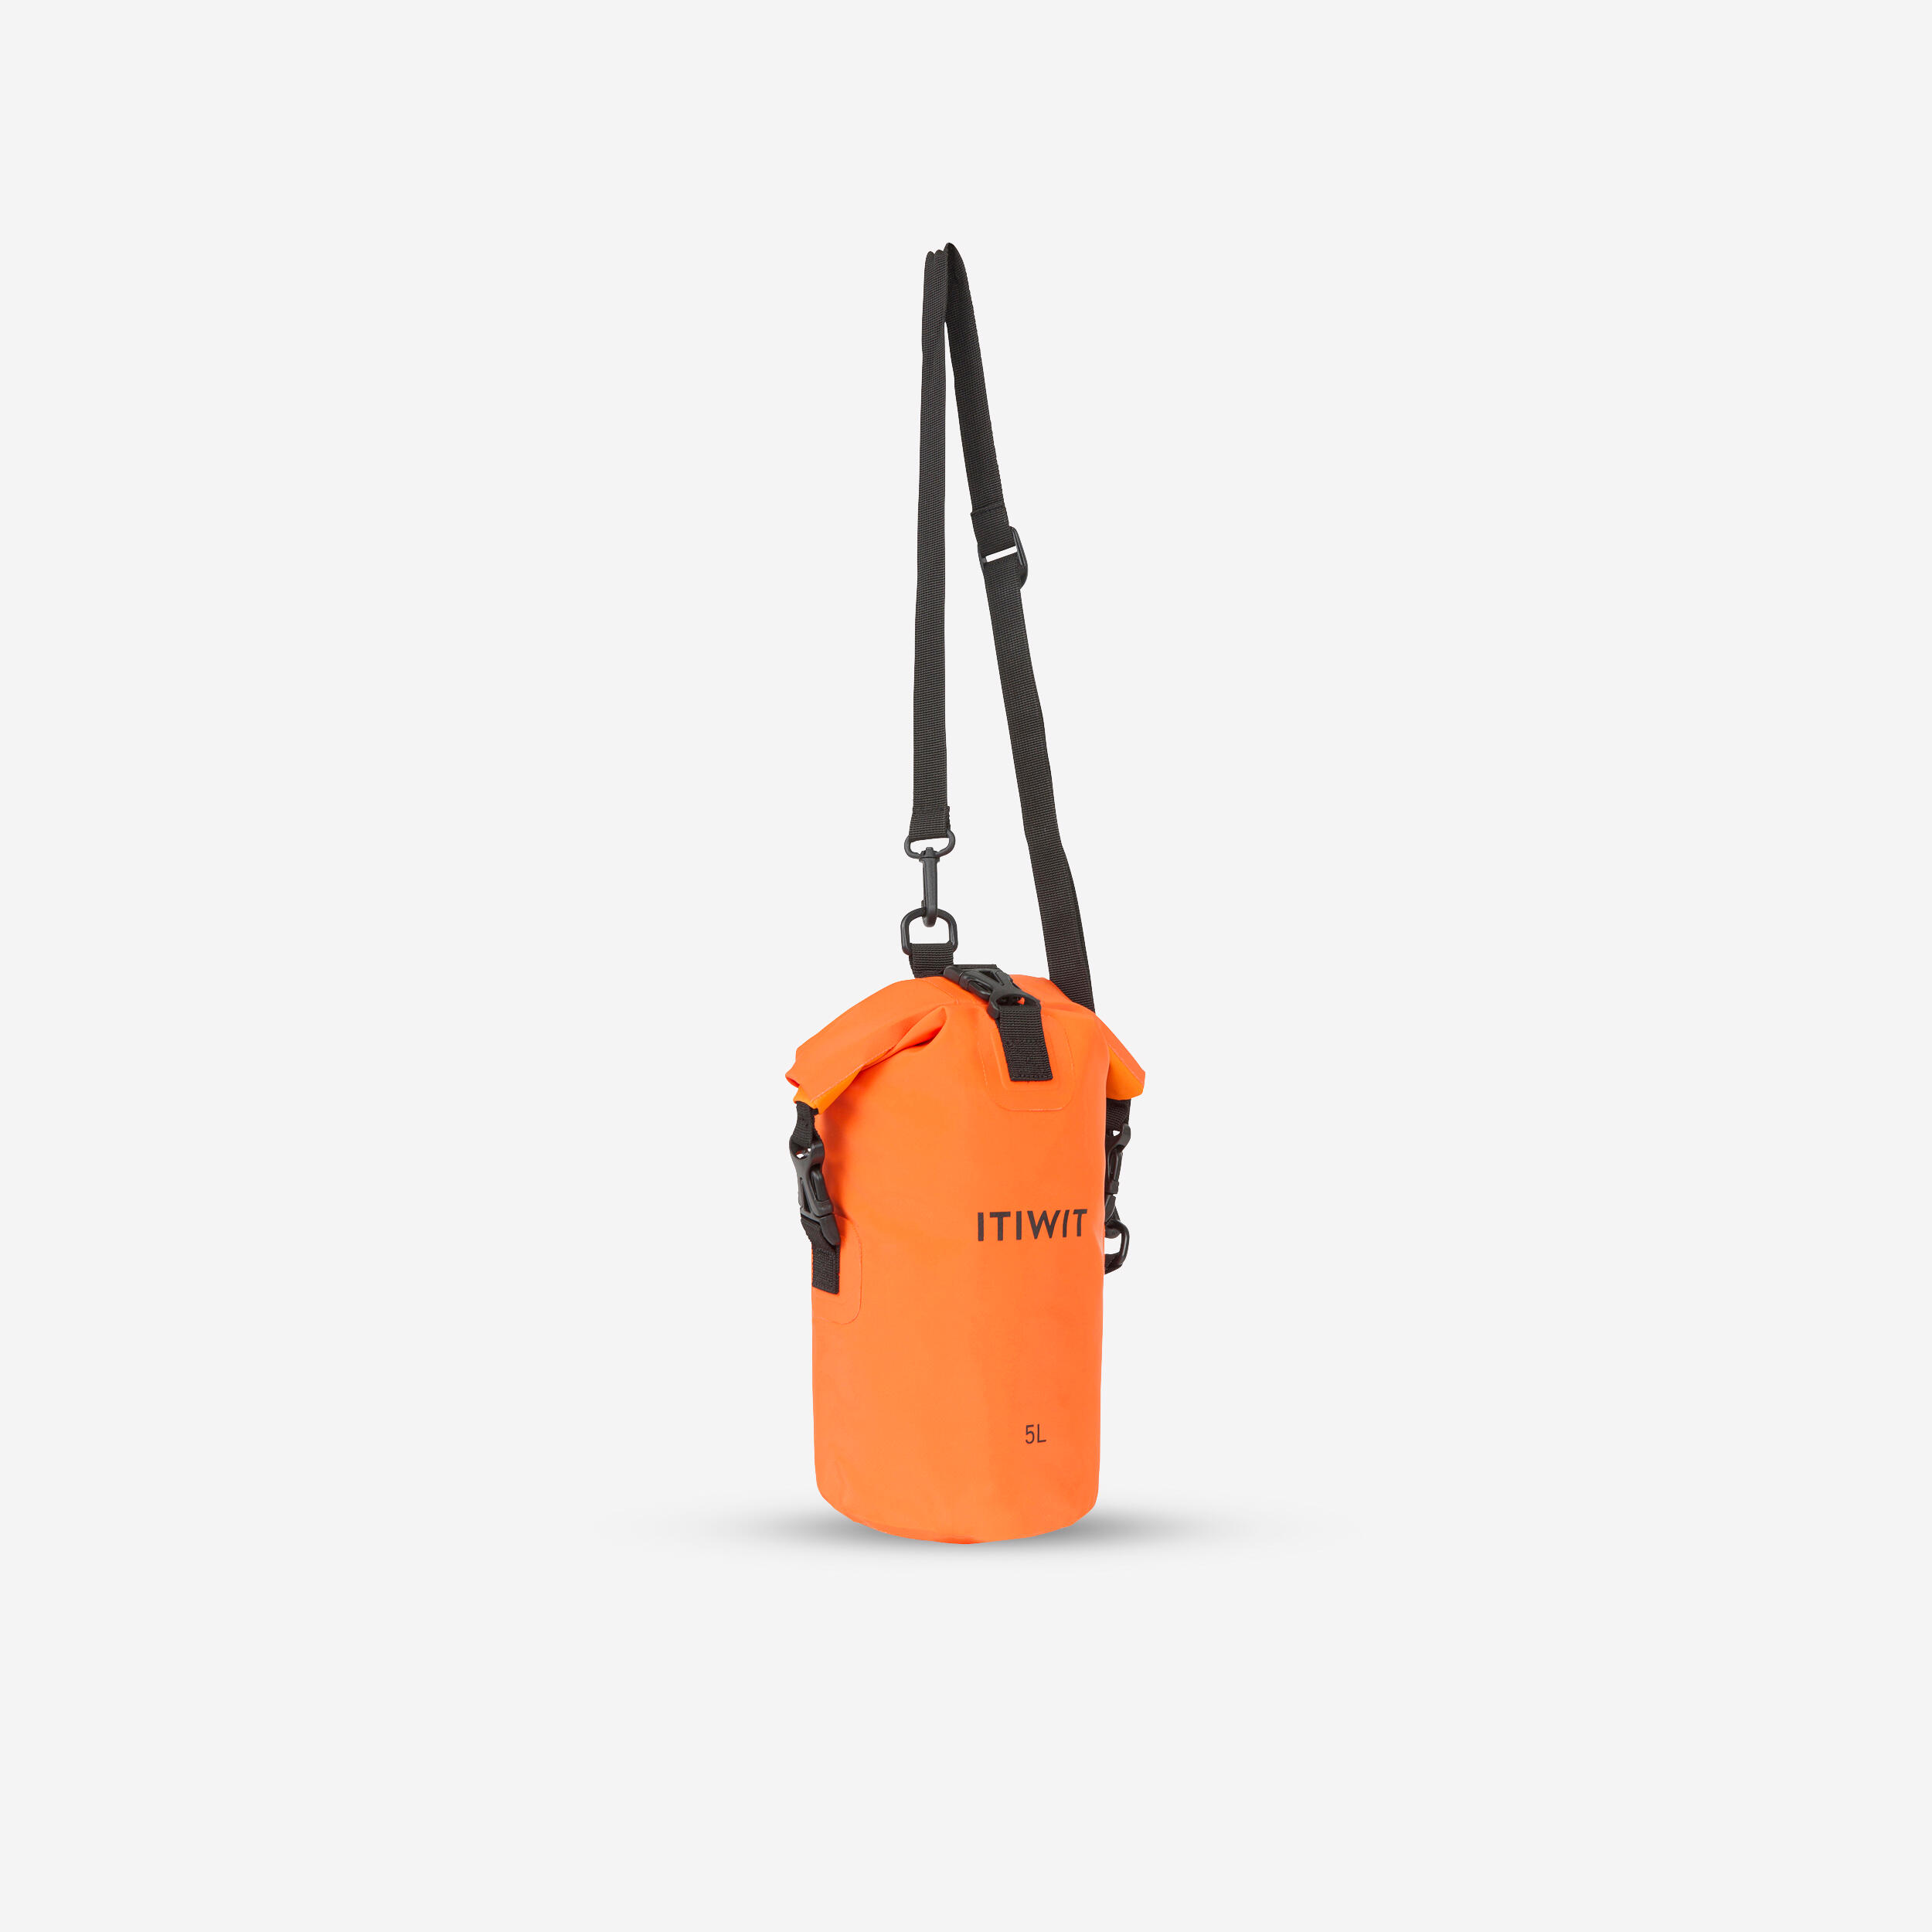 ITIWIT Wasserfeste Tasche 5 L - orange EINHEITSGRÖSSE